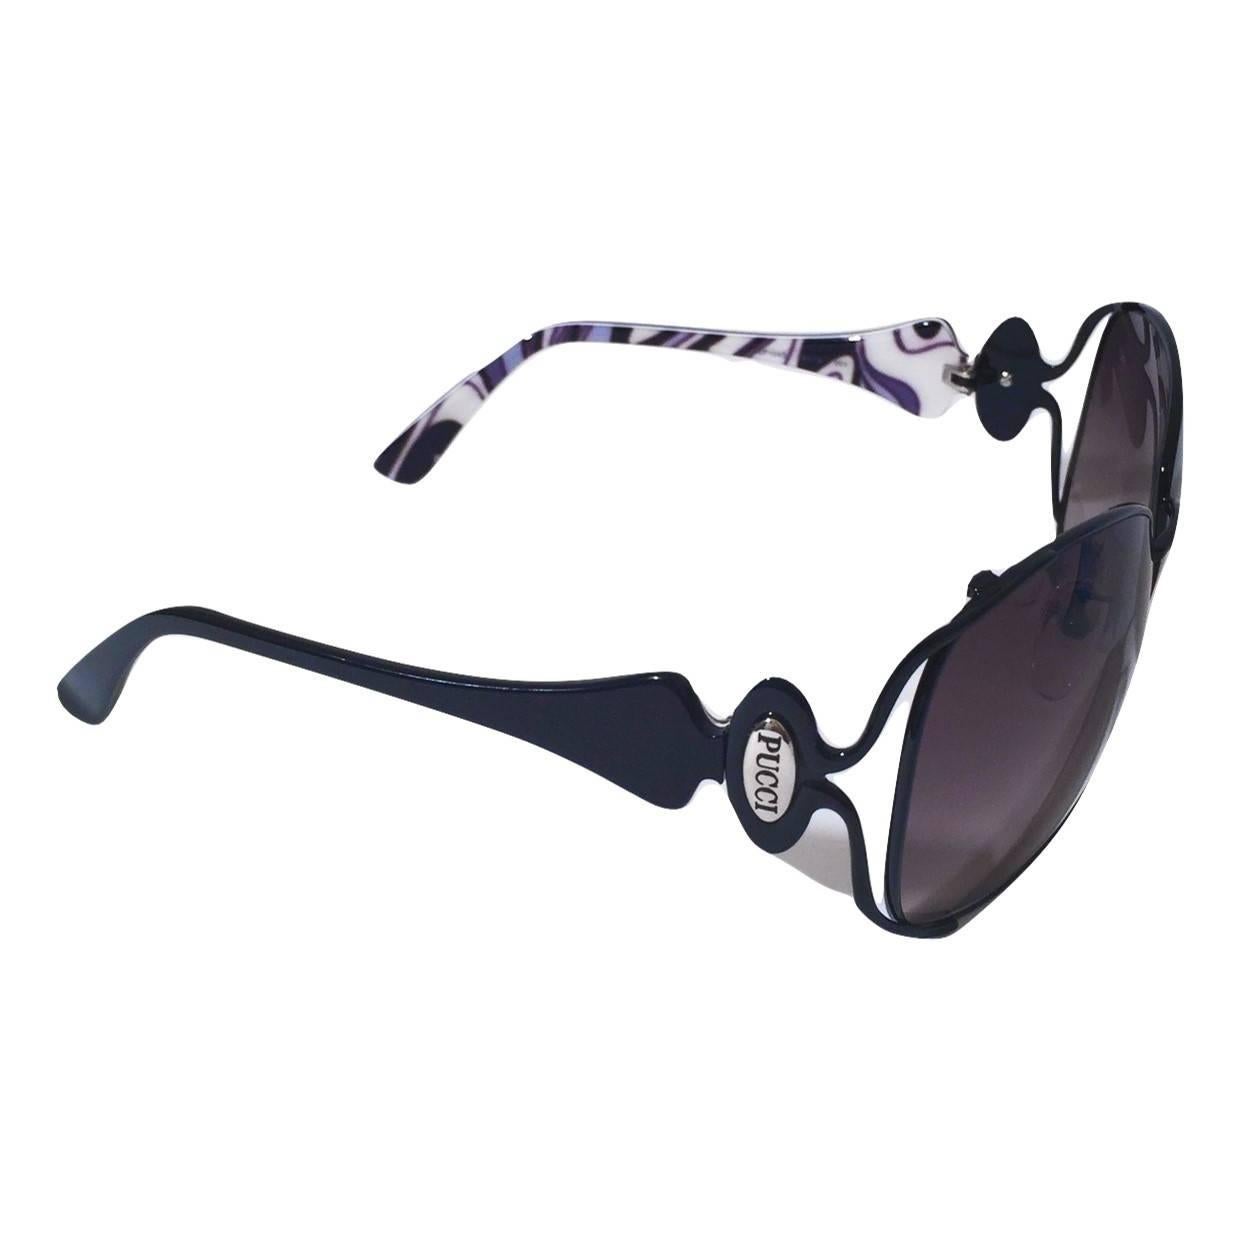 New Emilio Pucci Black Aviator Sunglasses With Case & Box 10